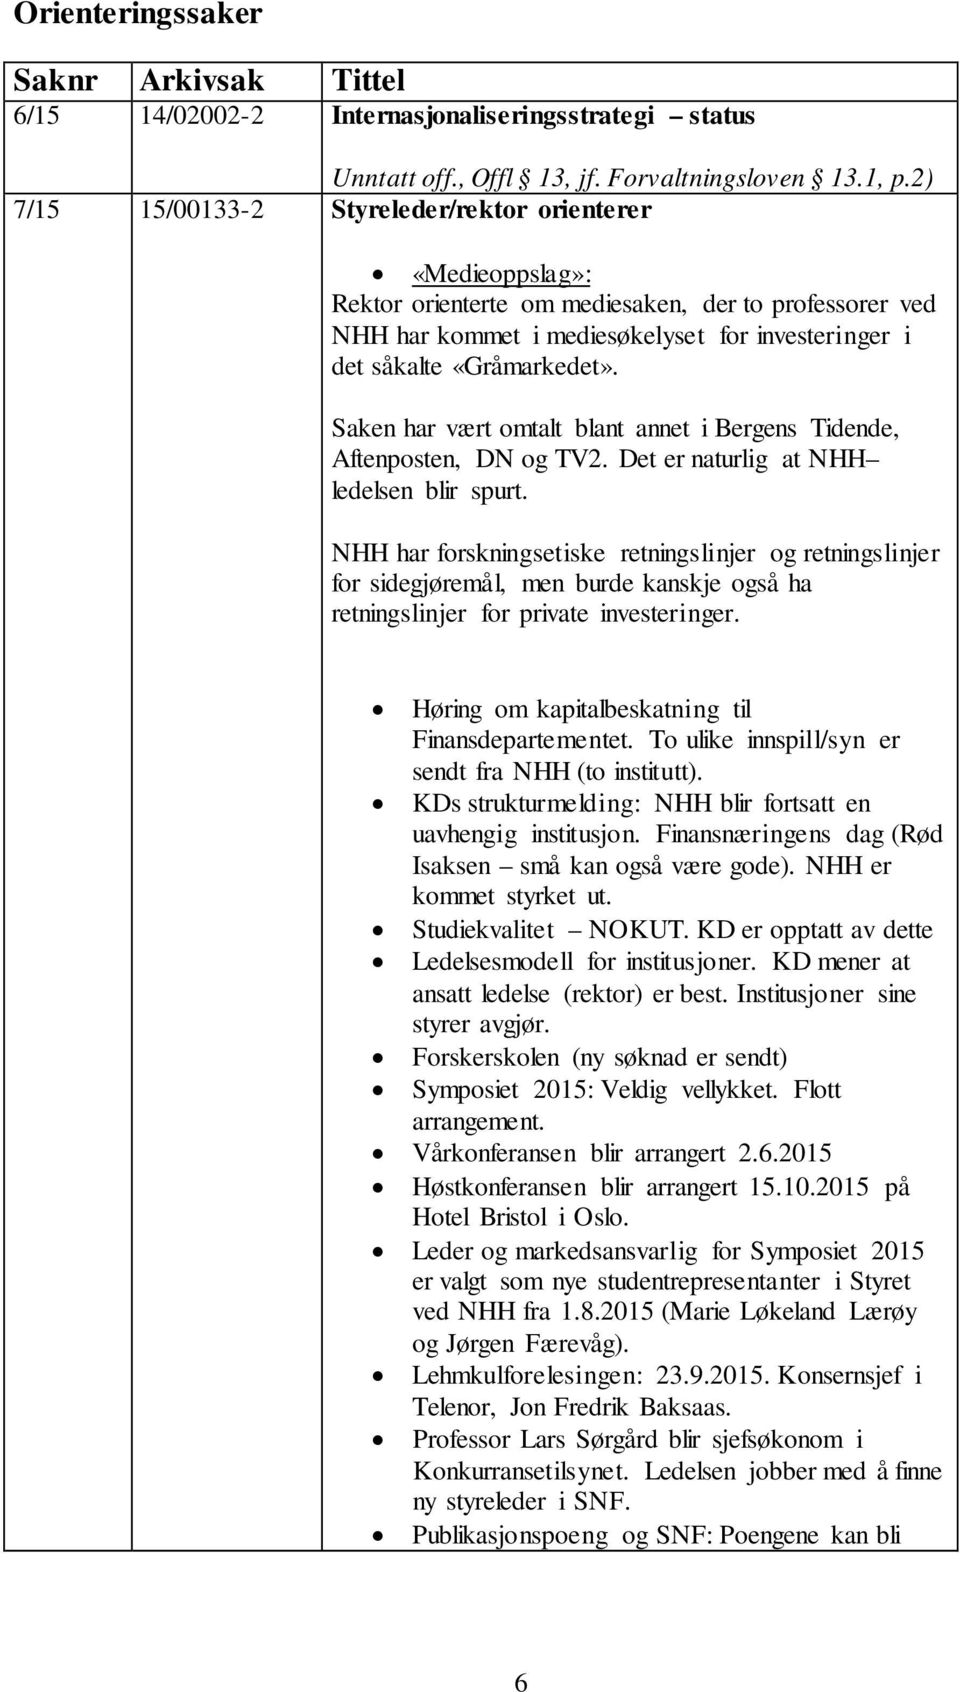 Saken har vært omtalt blant annet i Bergens Tidende, Aftenposten, DN og TV2. Det er naturlig at NHH ledelsen blir spurt.